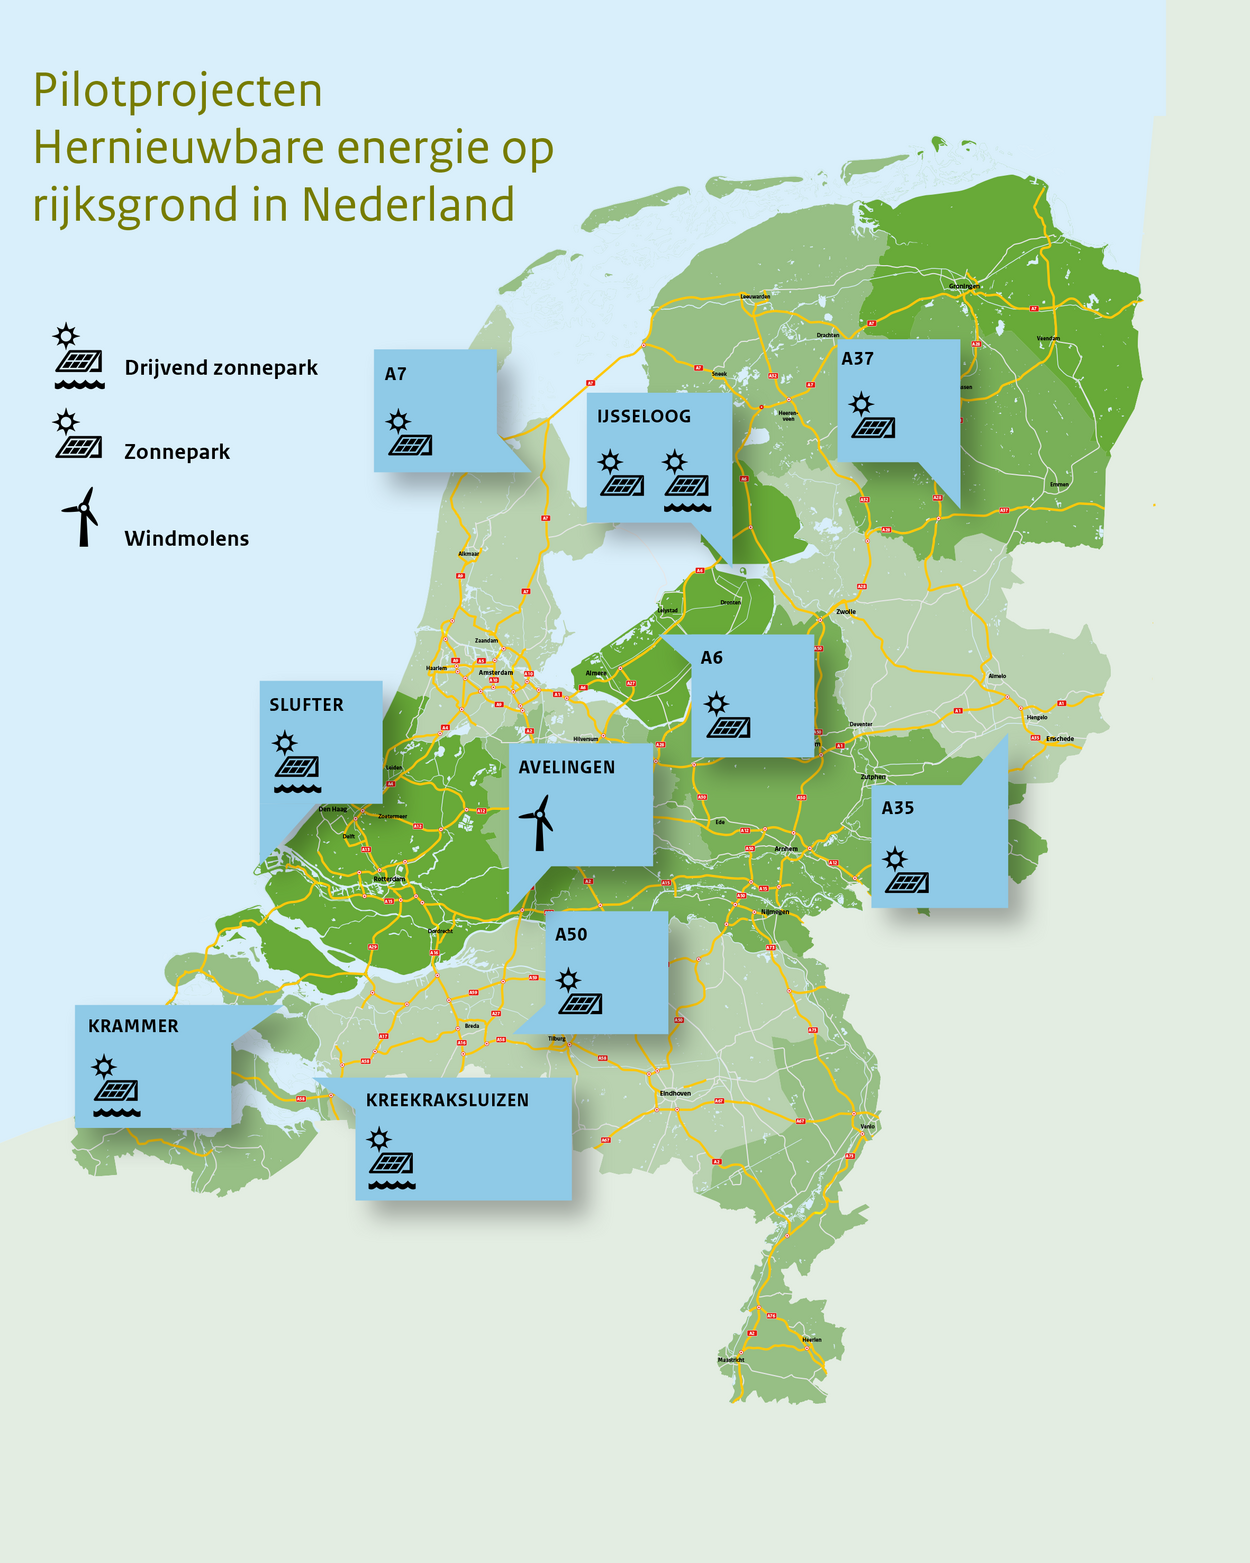 Kaart van Nederland waar alle provincies met kleurverschillen zijn aangeduid, en het weggennetwerk zichtbaar is gemaakt. De Projecten A7 (zonnepanelen), A37 (zonnepanelen), IJsseloog (zonnepanelen op land en water), Slufter (zonnepanelen op zee), Avelingen (windmolens), A6 (zonnepanelen), A35 (zonnepanelen), A50 (zonnepanelen), Kreekraksluizen (zonnepanelen op het water) en Krammer (zonnepanelen op het water) zijn weergegeven.